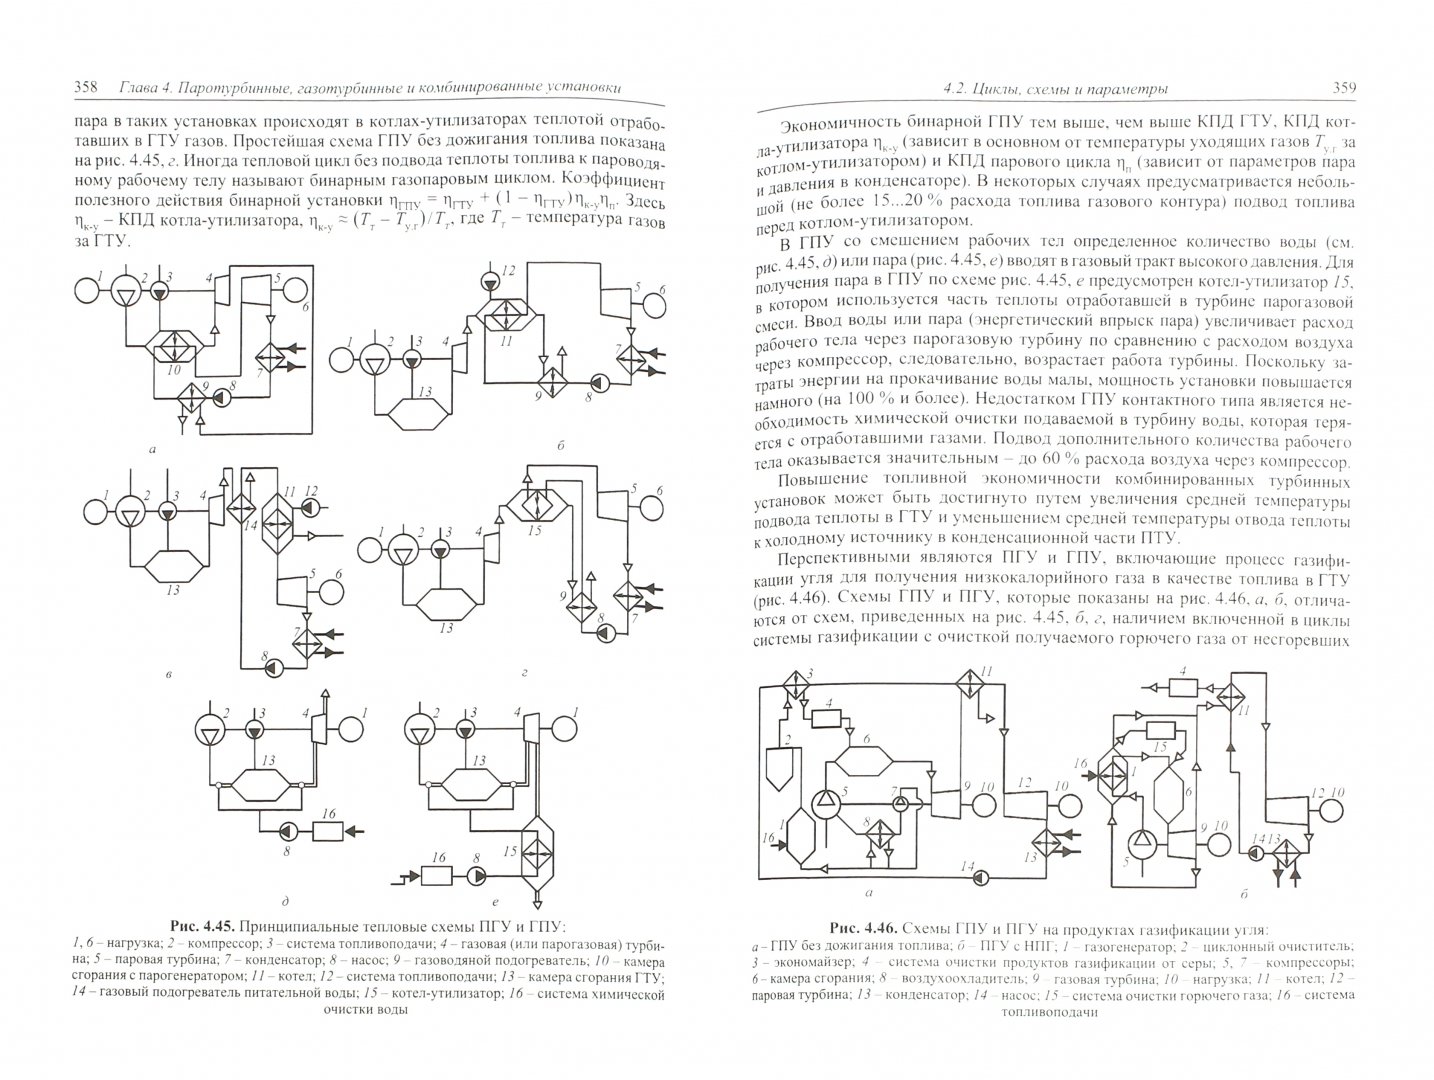 Учебное пособие: Газовый цикл тепловых двигателей и установок